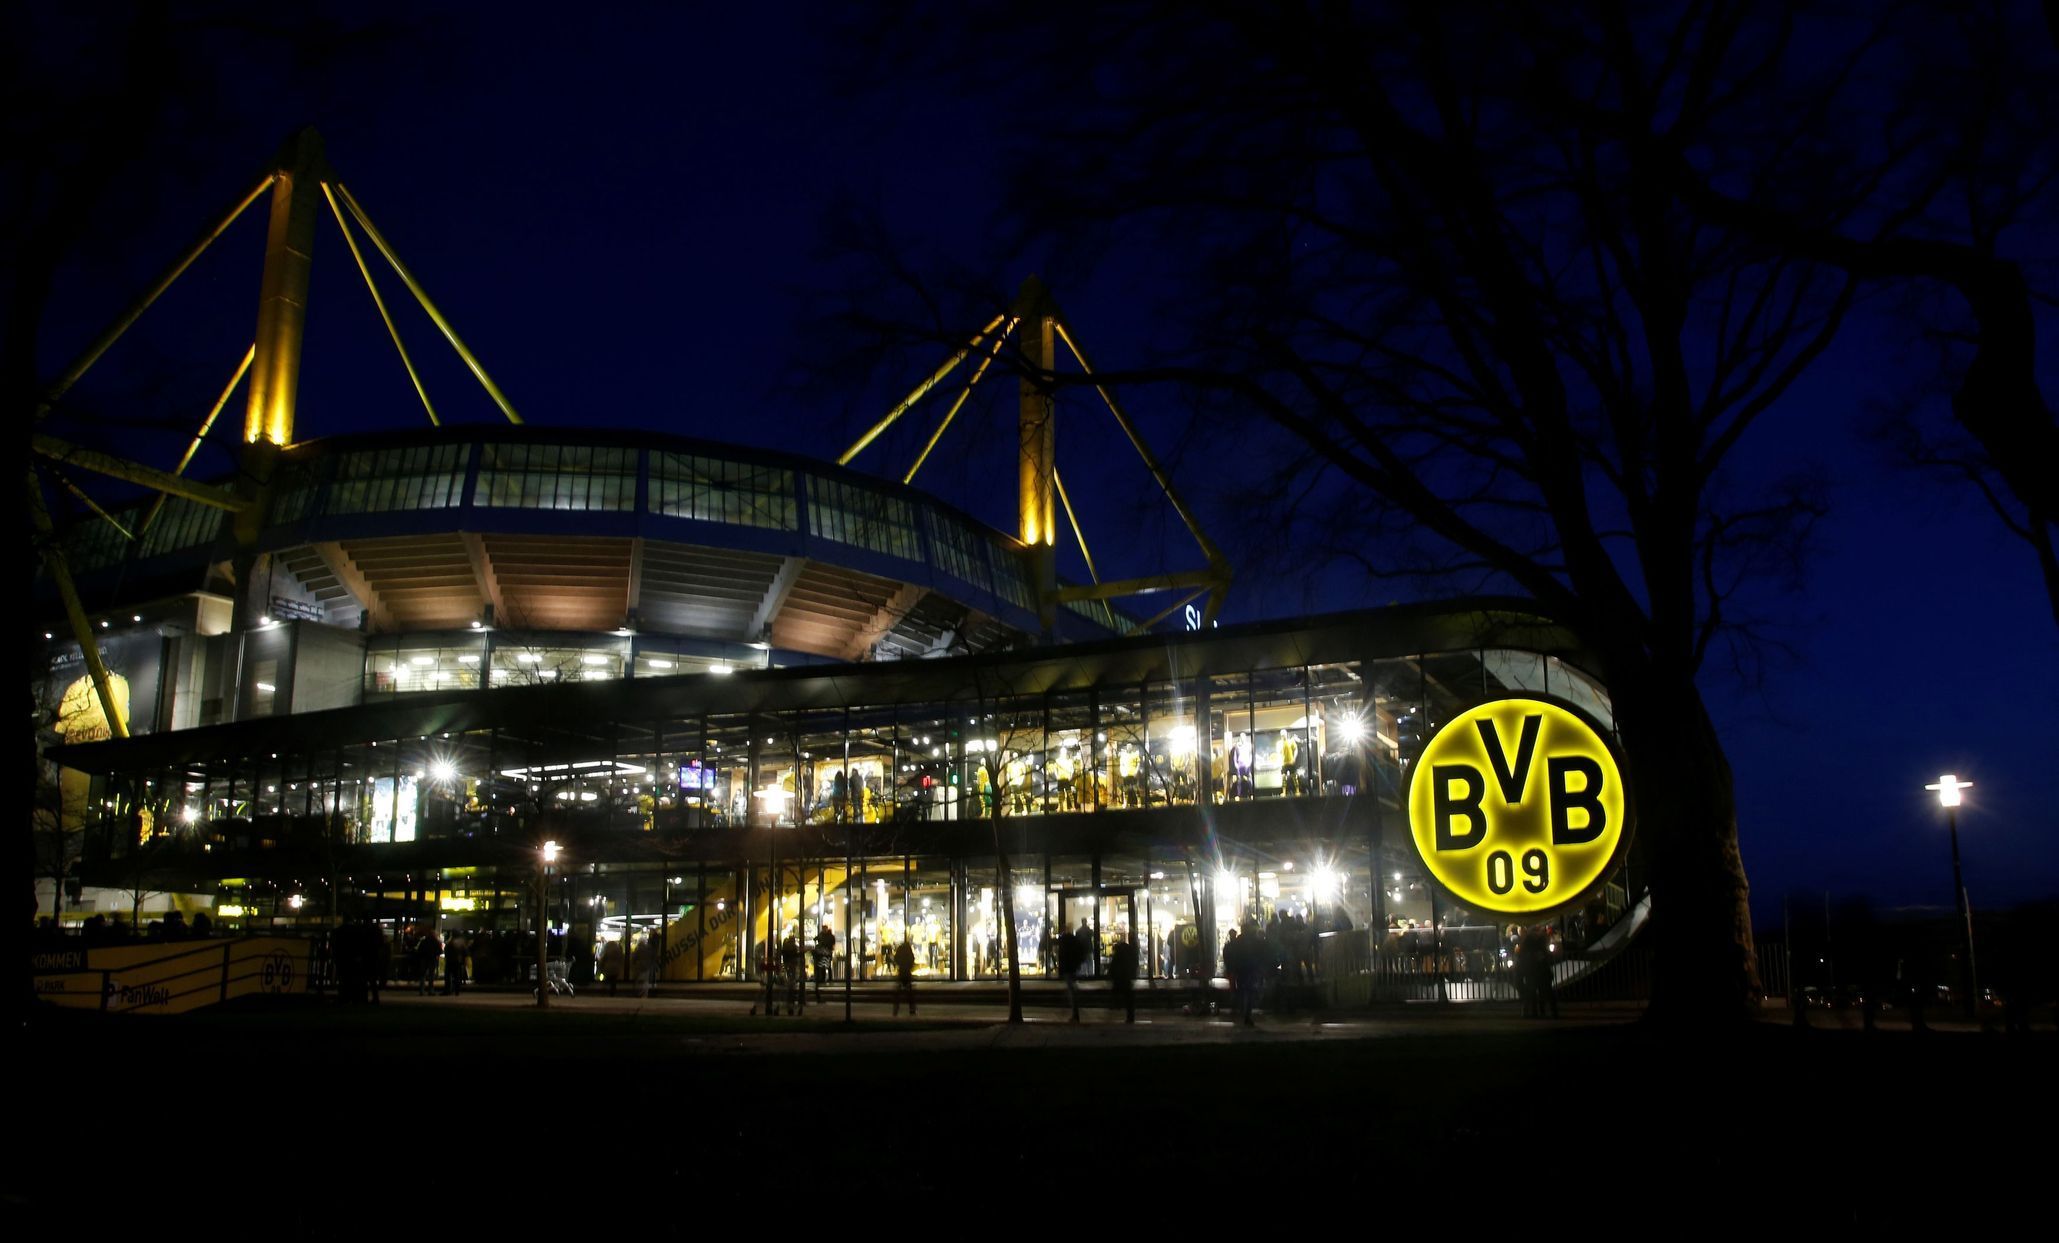 Osmifinále Ligy mistrů 2019/20, Dortmund - PSG: Stadion Signal Iduna Park